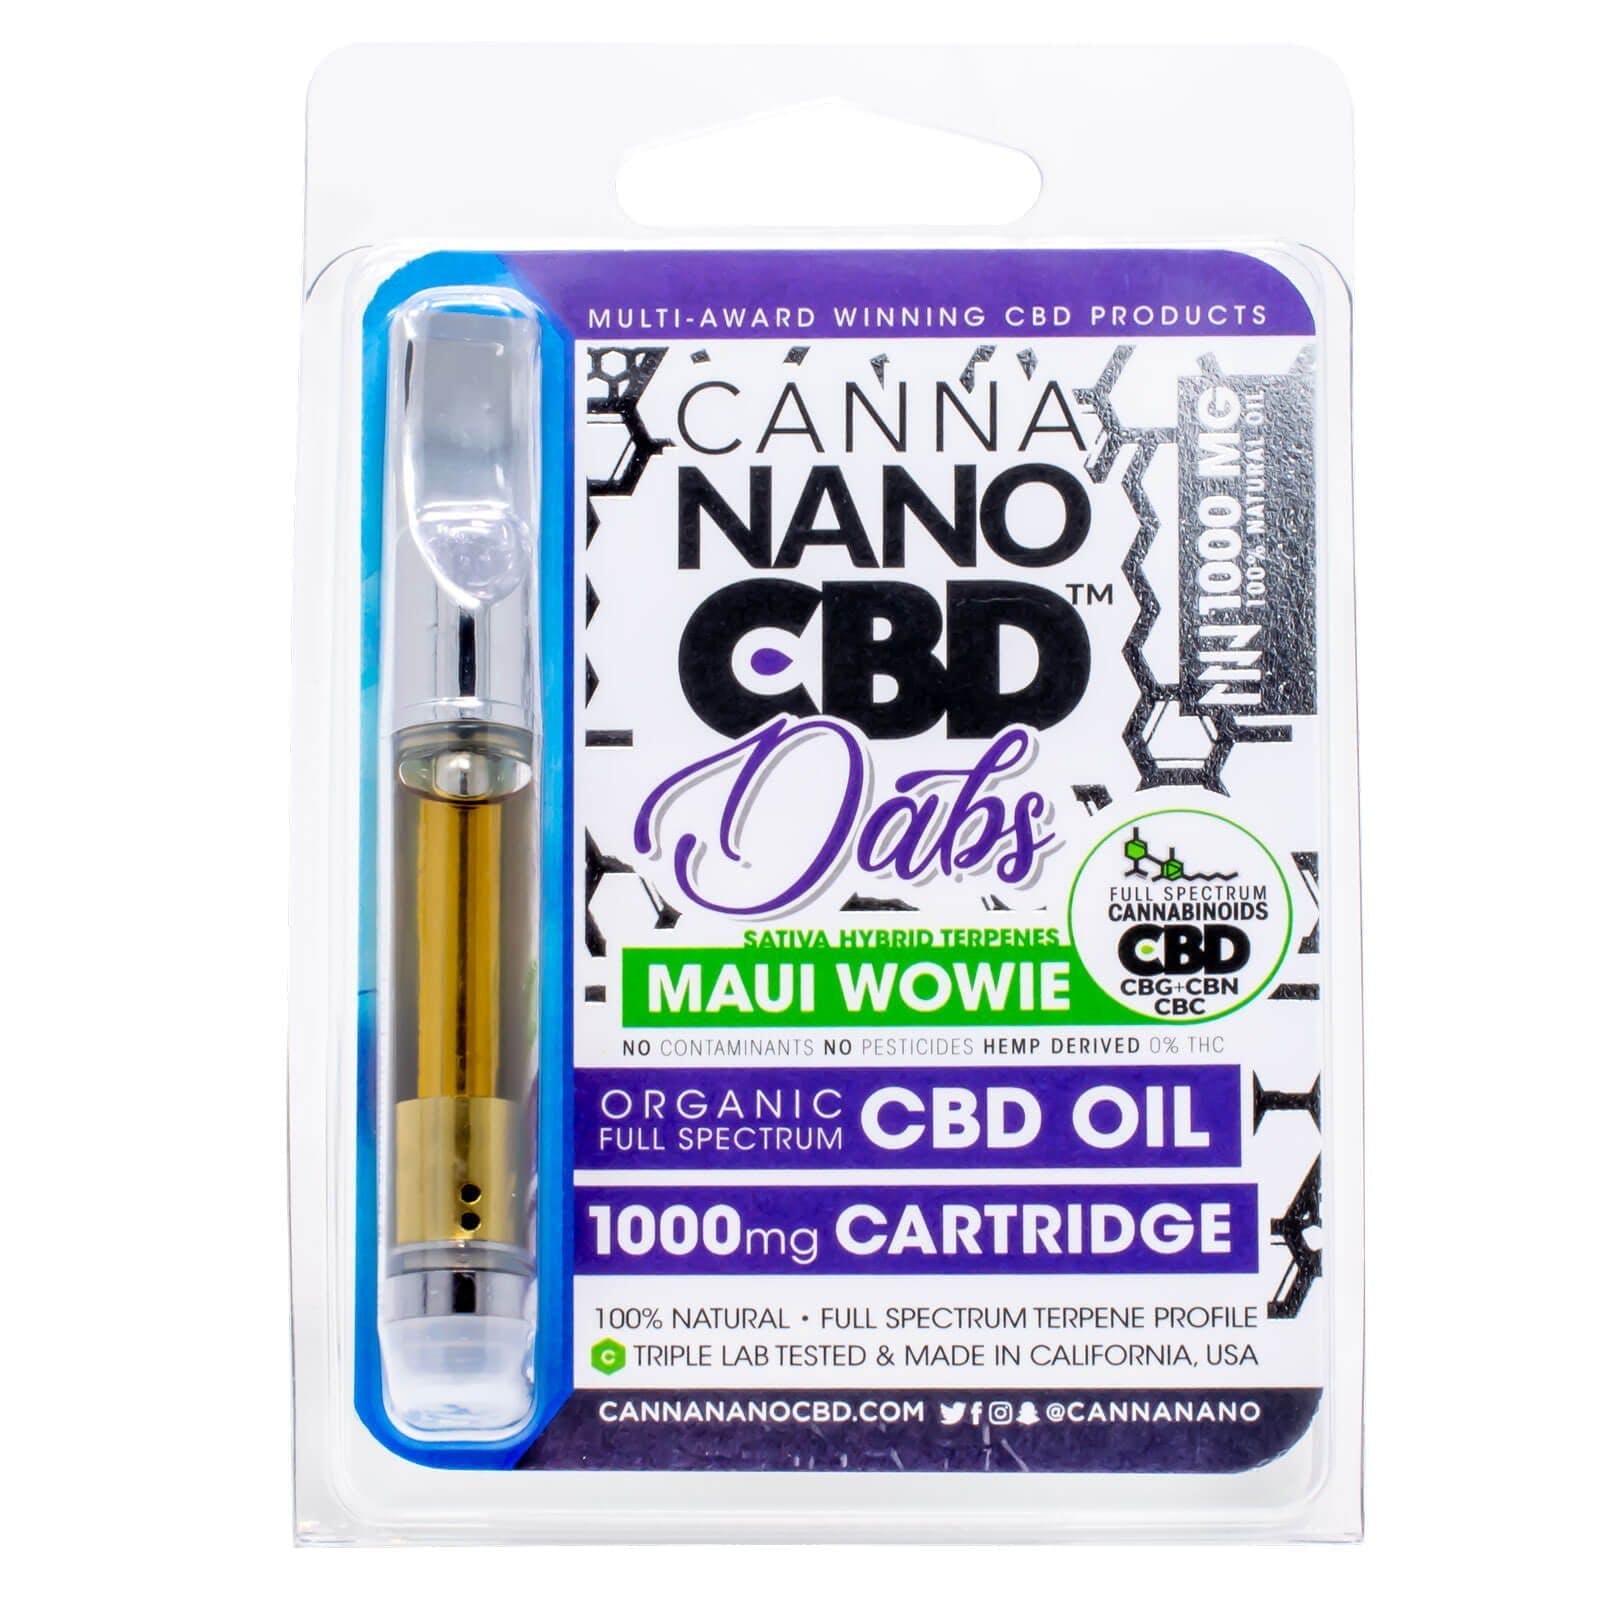 marijuana-dispensaries-cbd-shop-in-san-juan-capistrano-canna-nano-cbd-cartridge-dabs